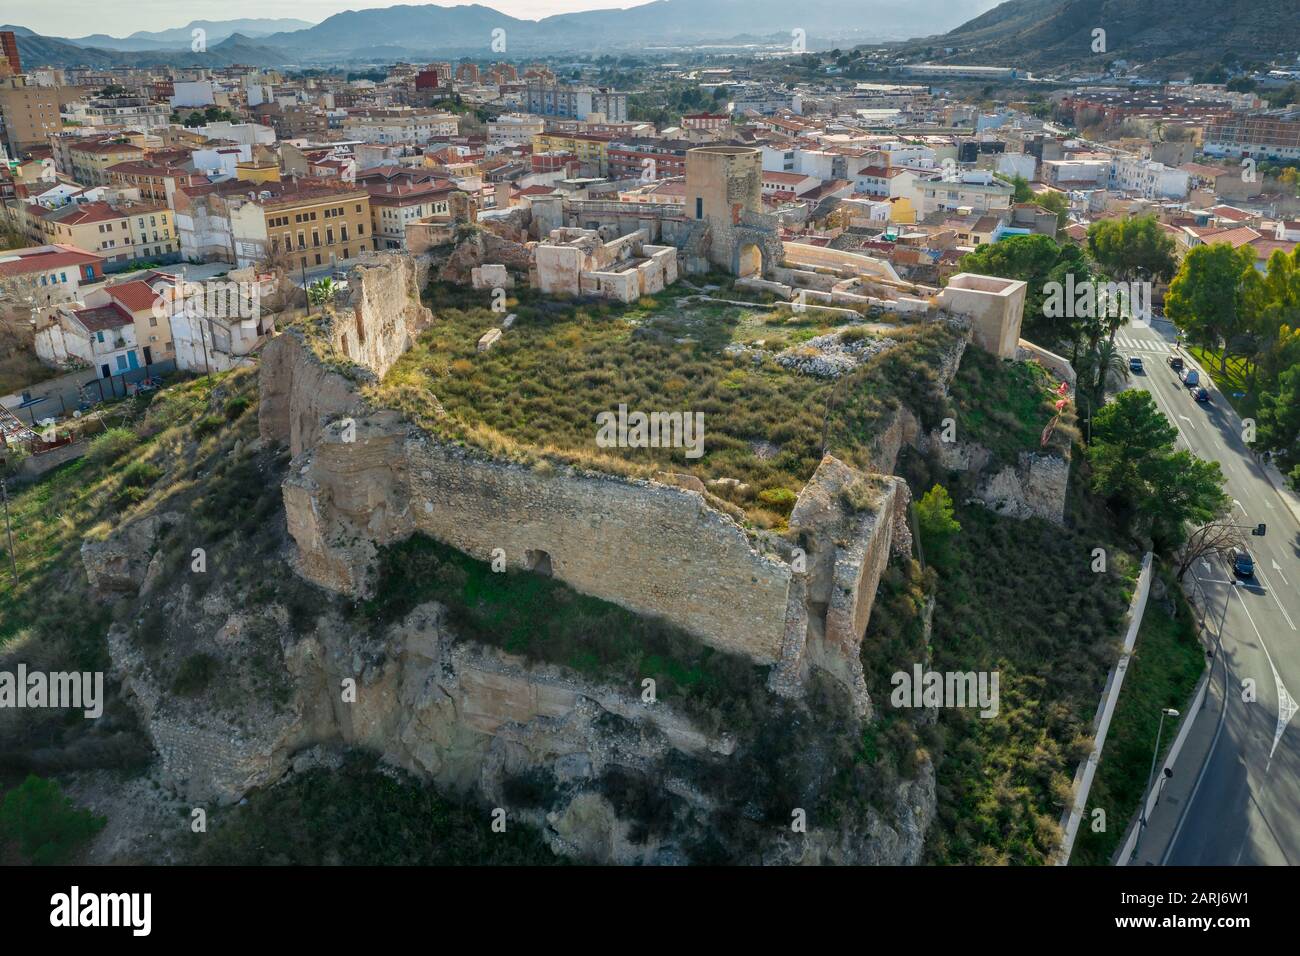 Veduta panoramica aerea del castello medievale di Elda sopra la città con mura, torri e porte parzialmente restaurate in pietra calcarea bianca in Spagna Foto Stock